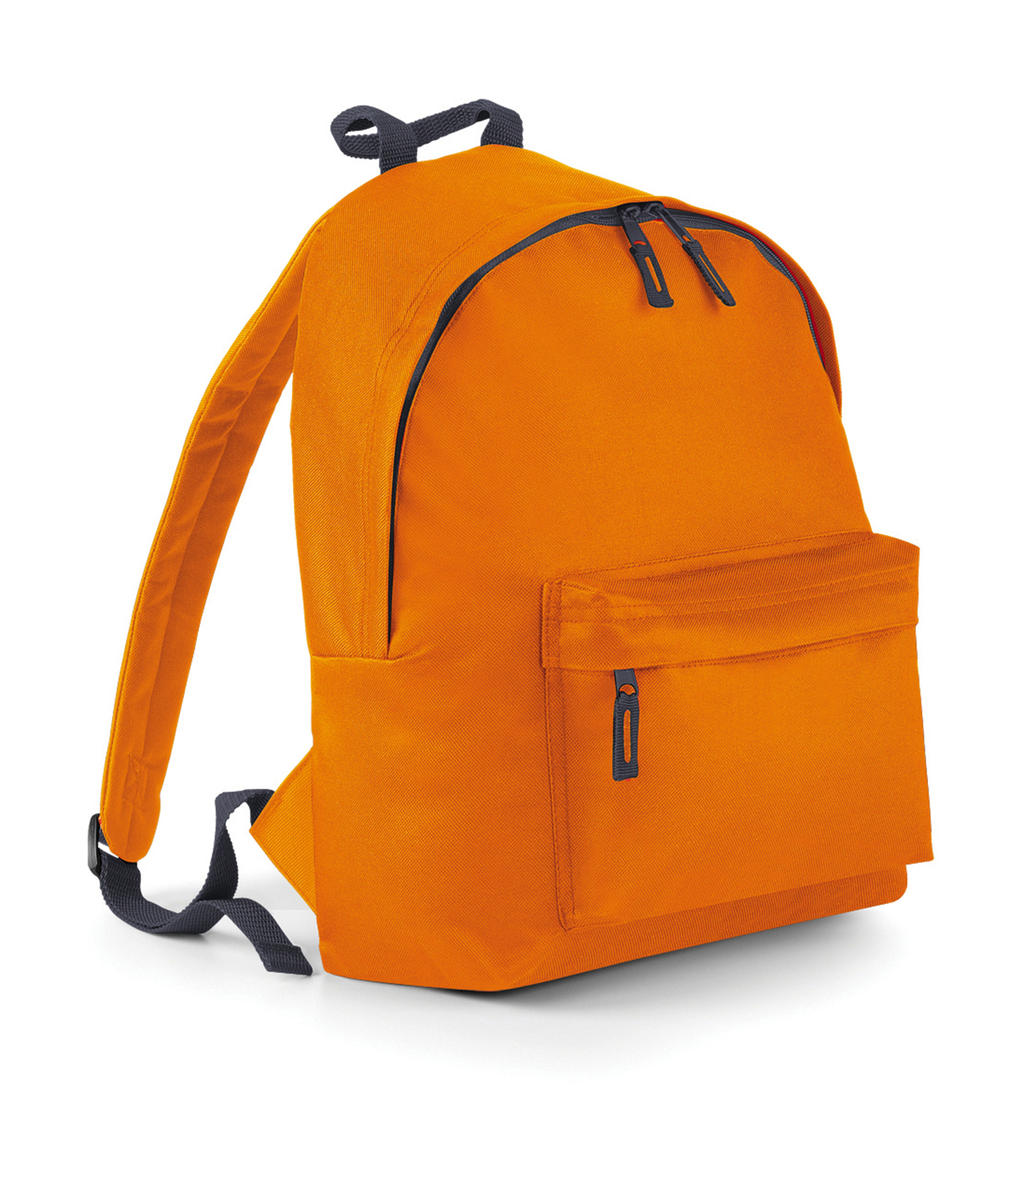  Junior Fashion Backpack in Farbe Orange/Graphite Grey